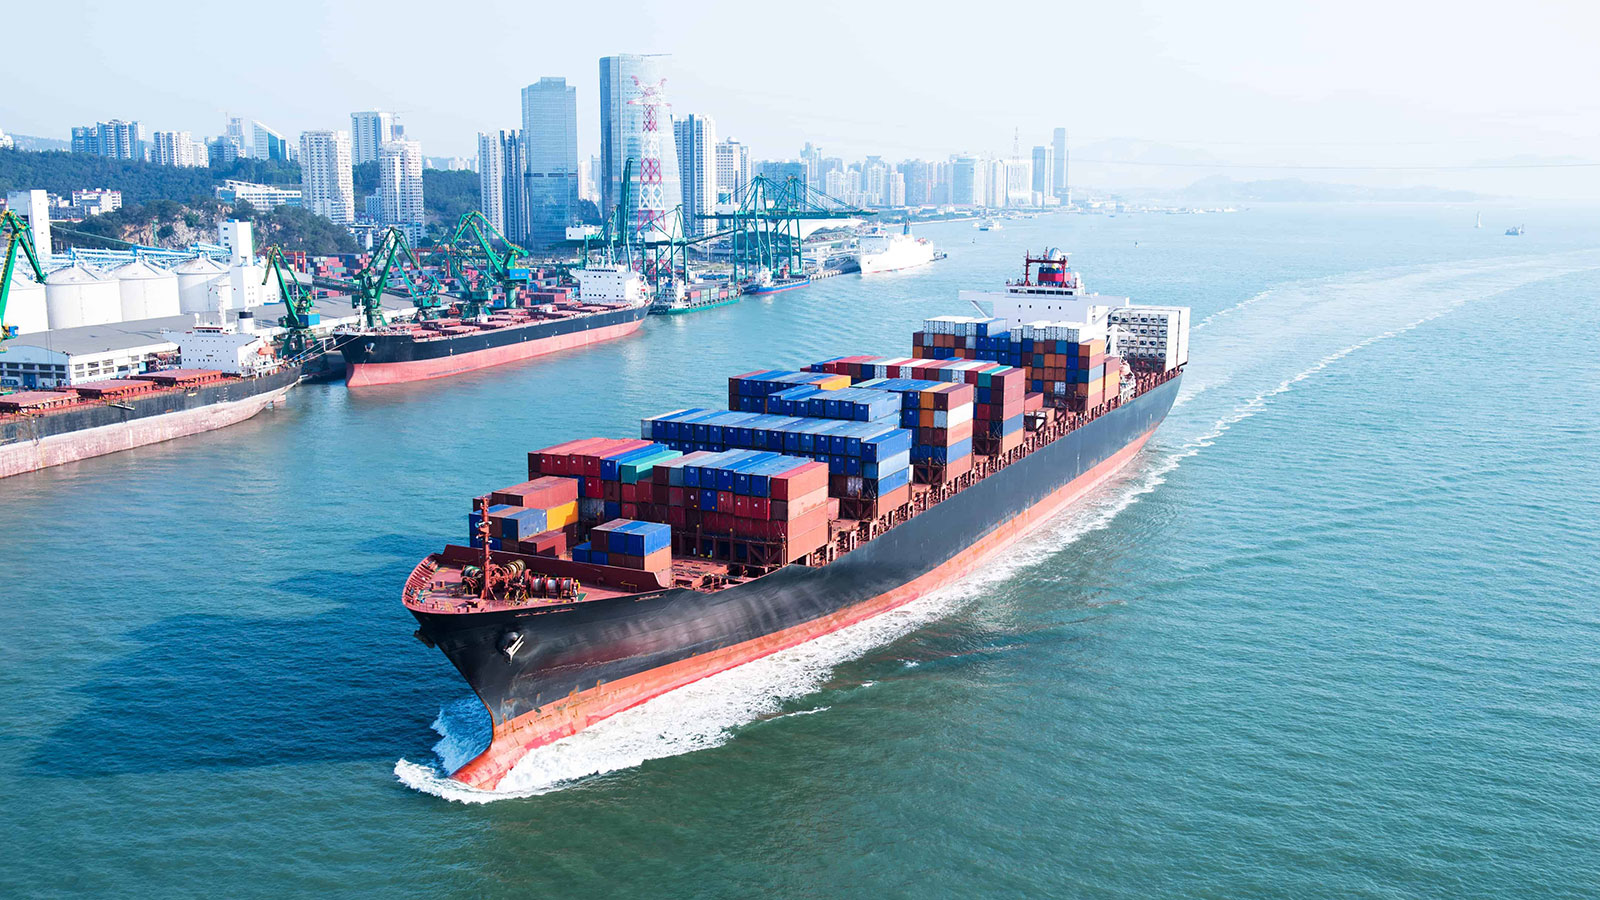 Tráfico marítimo lejano oriente - Un nudo logístico y sin soluciones mágicas